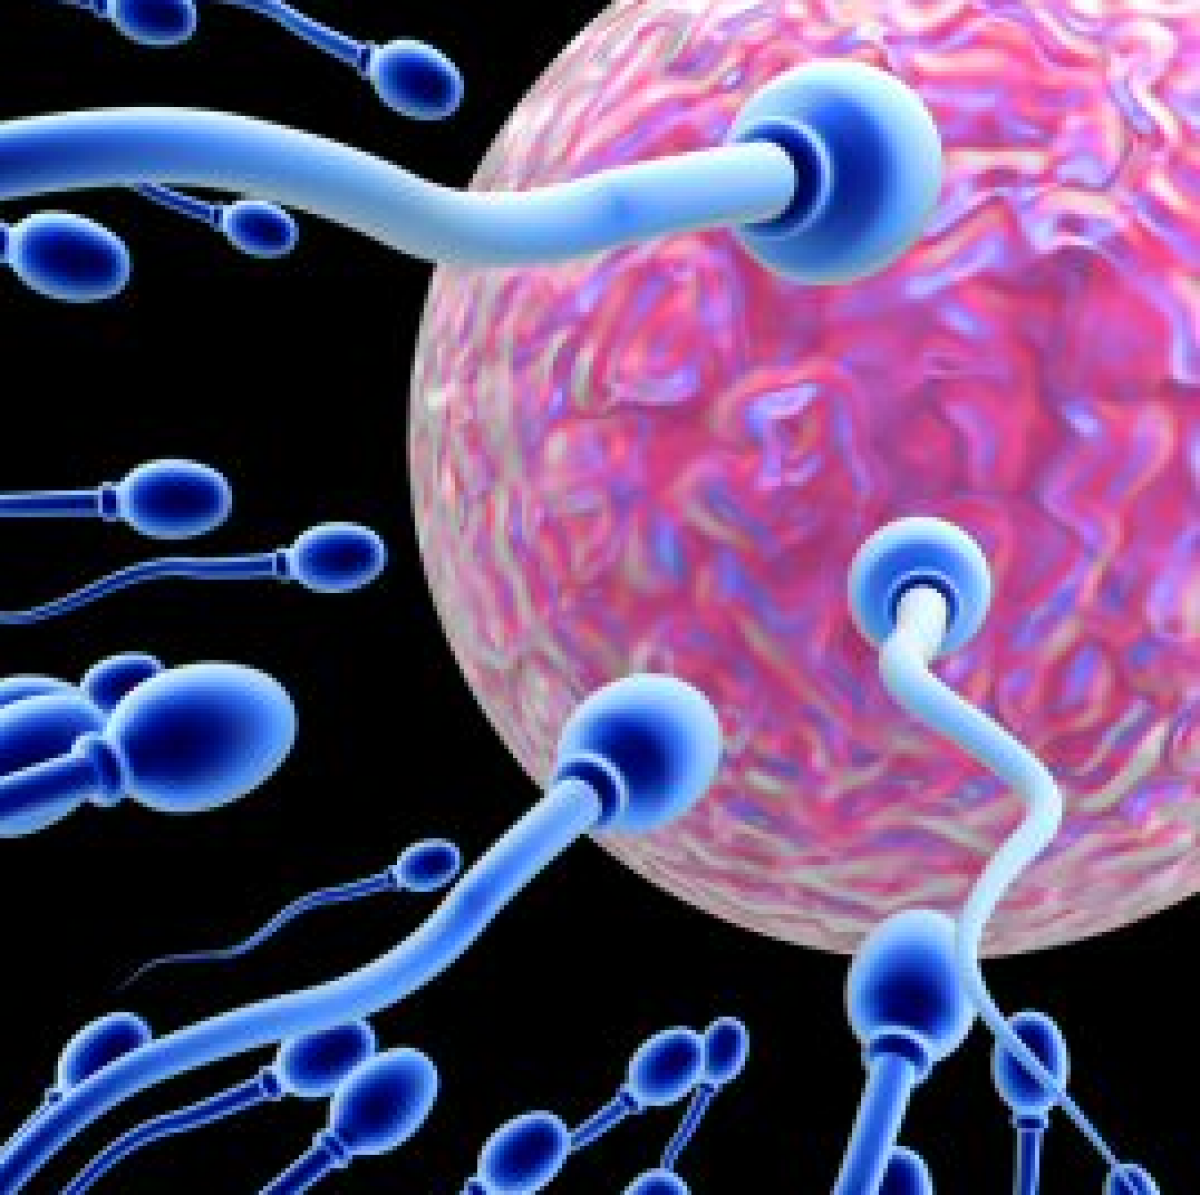 Θέλω να μείνω έγκυος: Η μέθοδος «Το σπέρμα συναντά το αβγό»